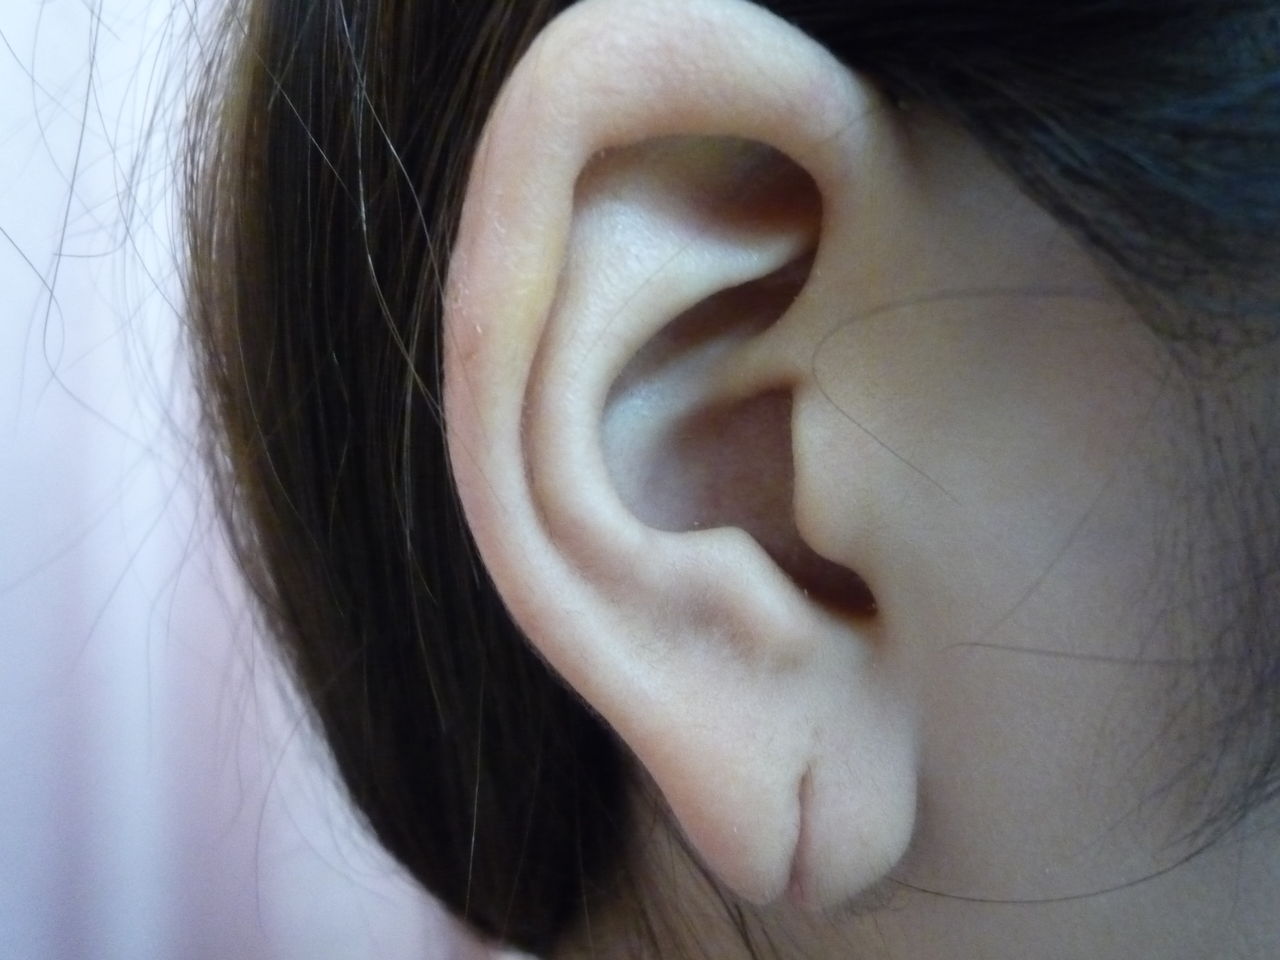 耳たぶ 二 つ に 割れ て いる